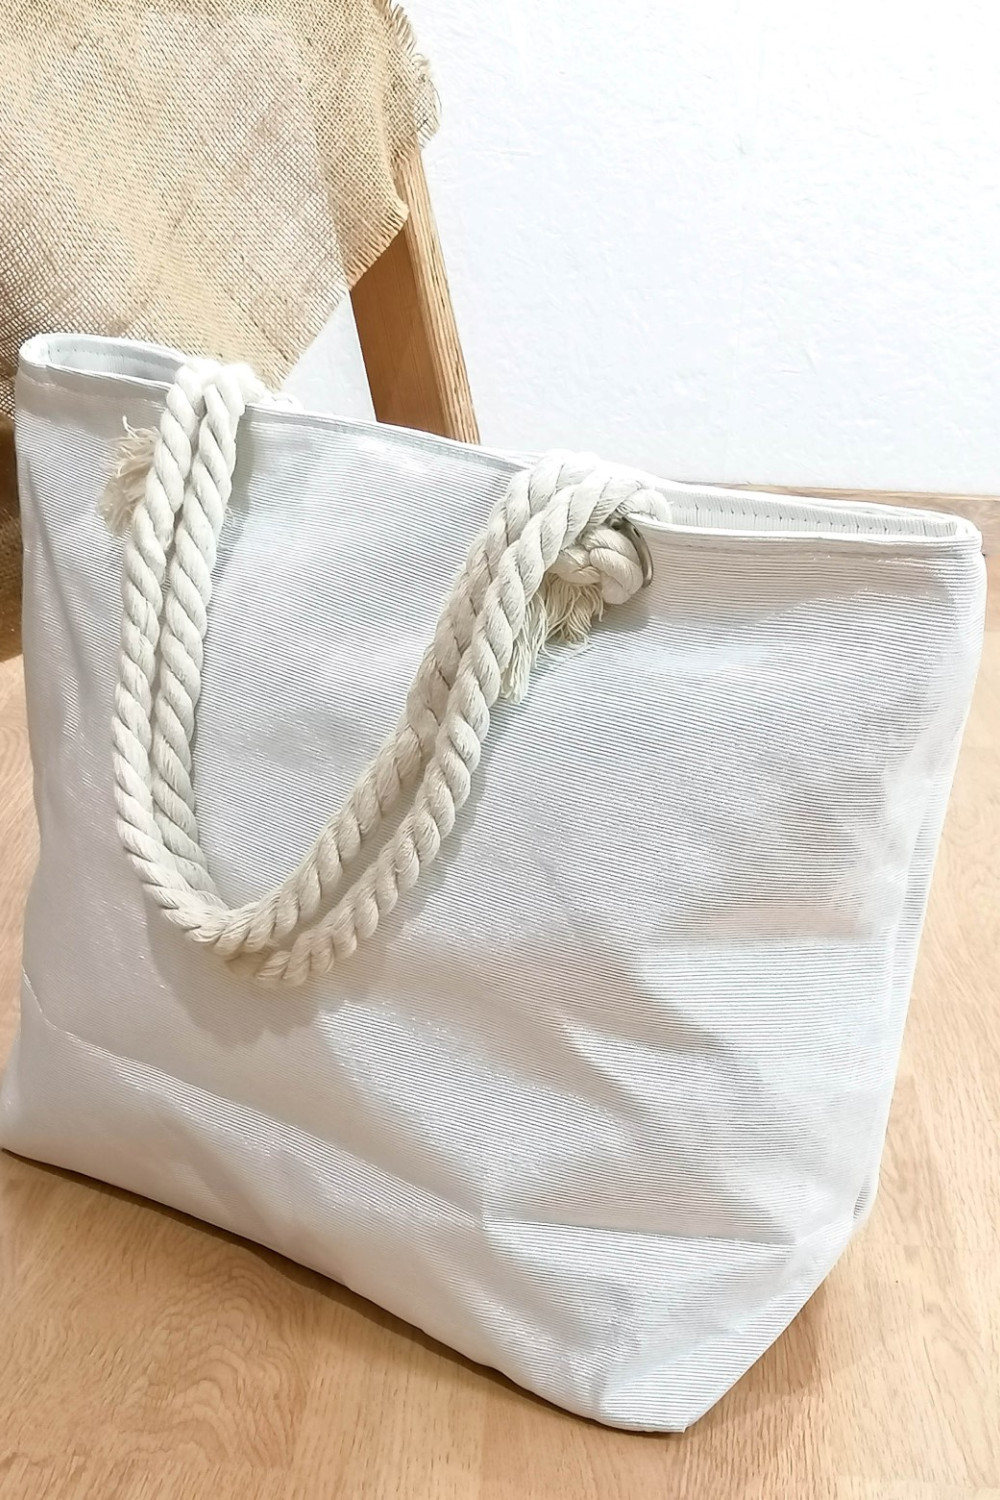 Γυναικεία εκρού τσάντα θαλάσσης με τύπωμα 201908